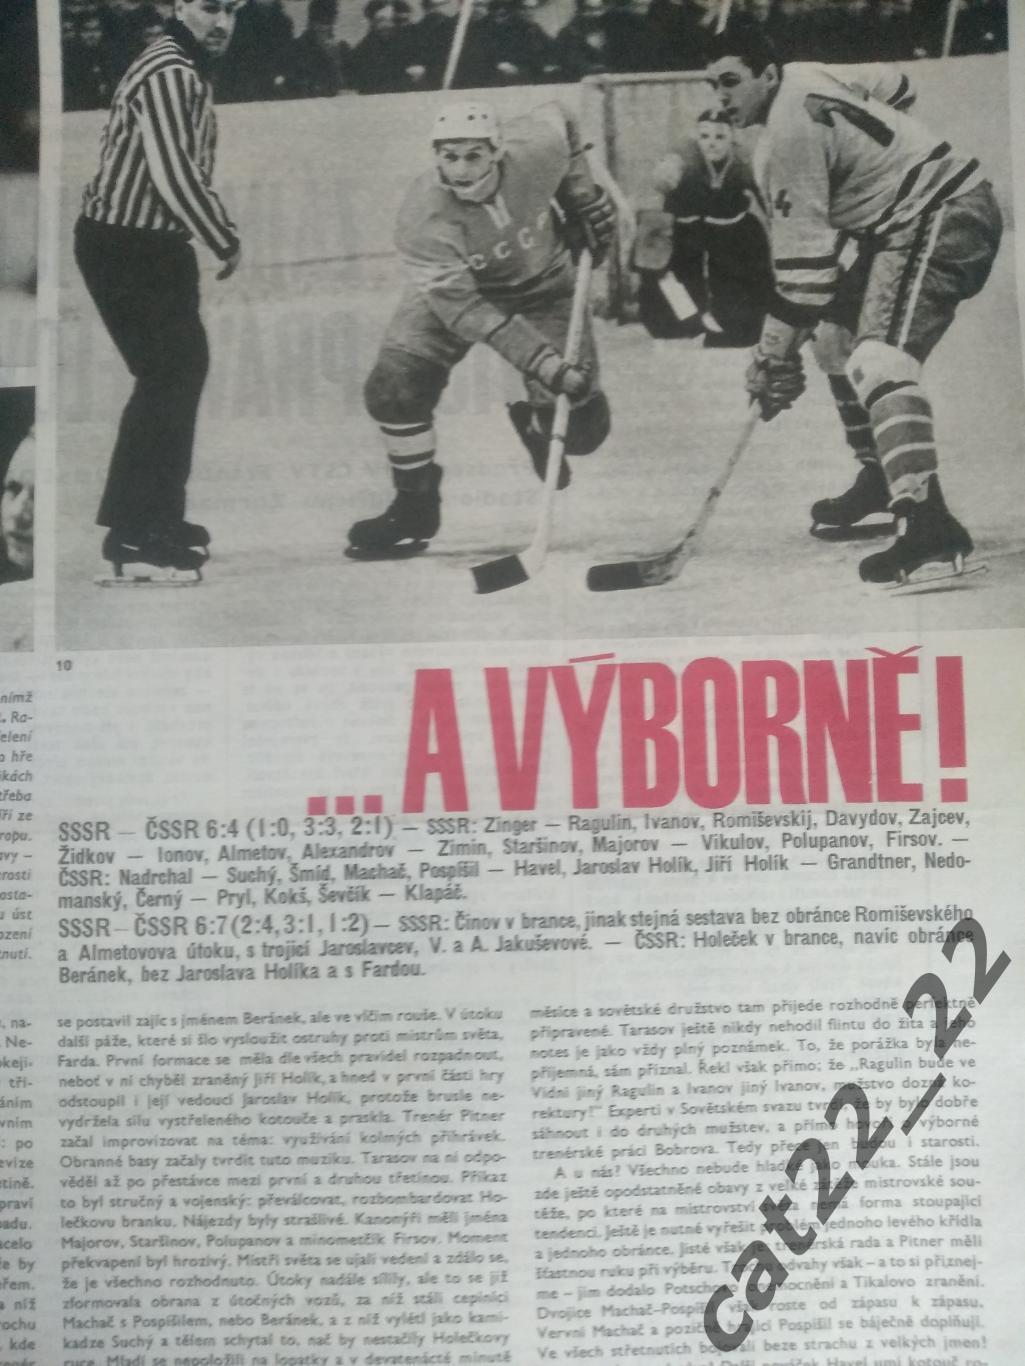 Журнал Стадион/Stadion. Полный номер. Хоккей. СССР 49 1966 2